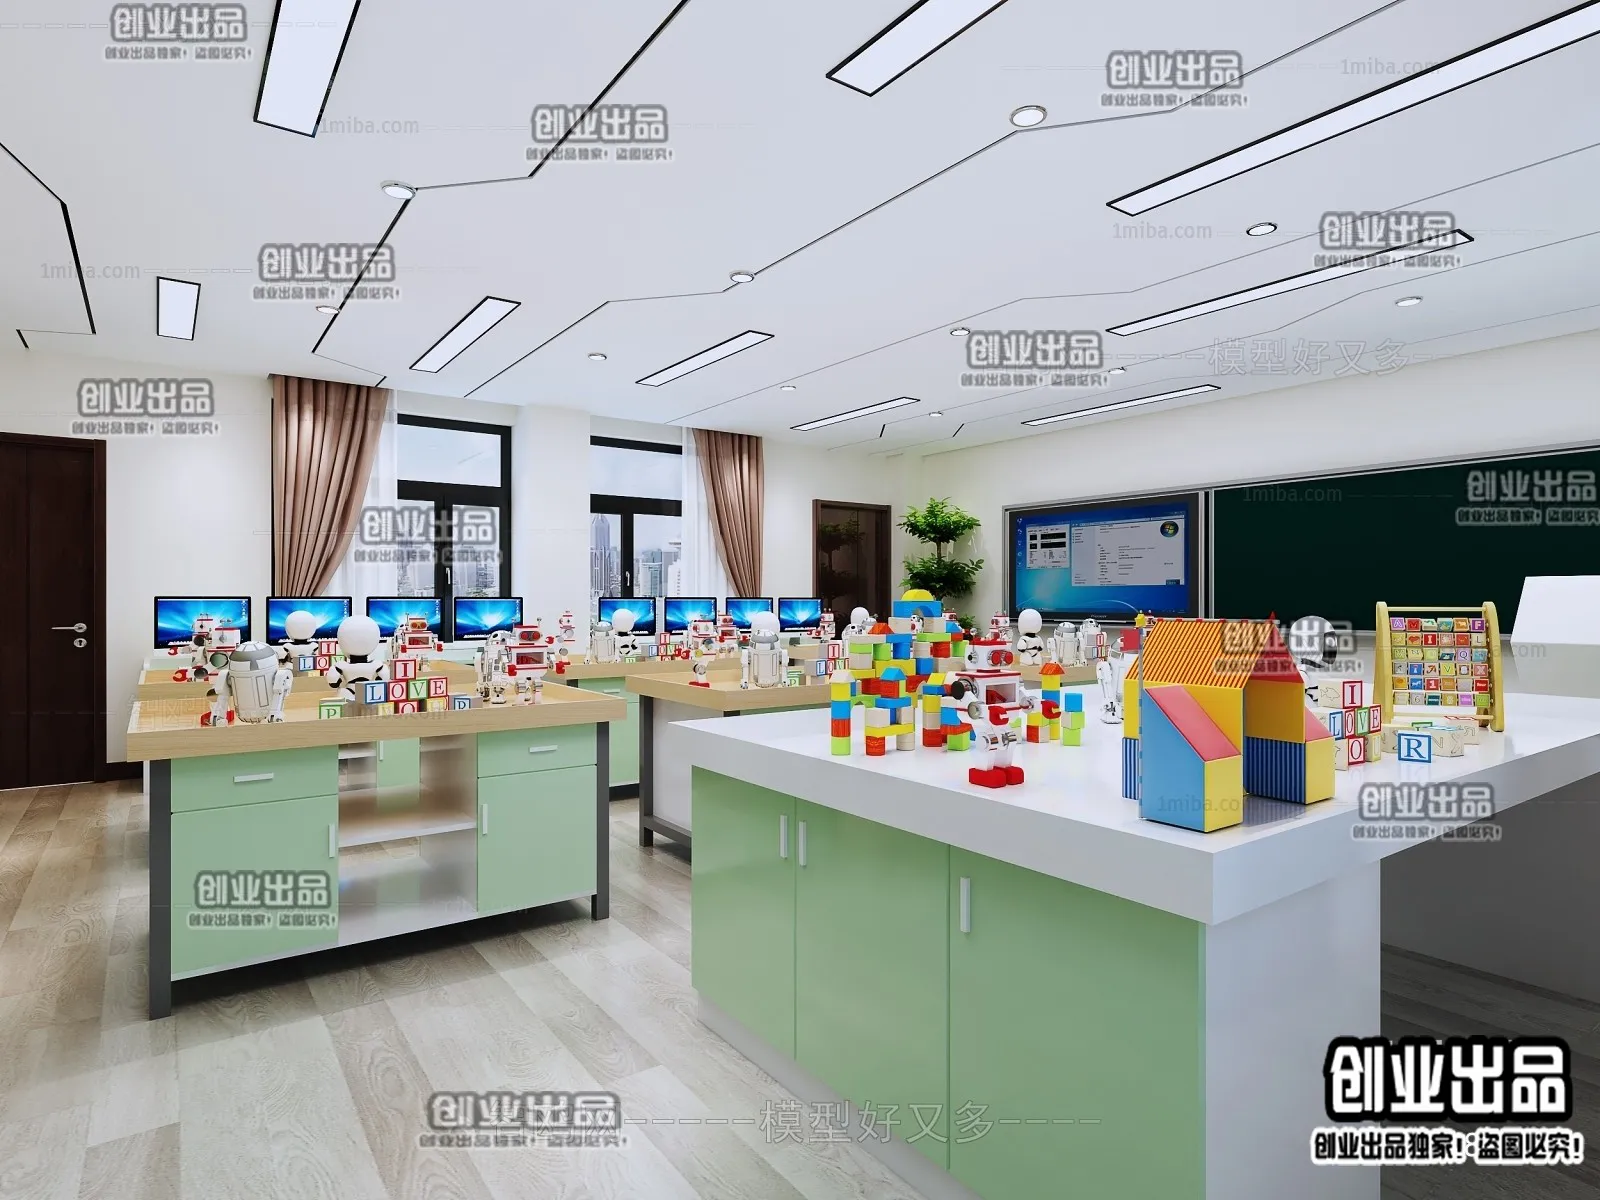 3D SCHOOL INTERIOR (VRAY) – CLASSROOM 3D SCENES – 008